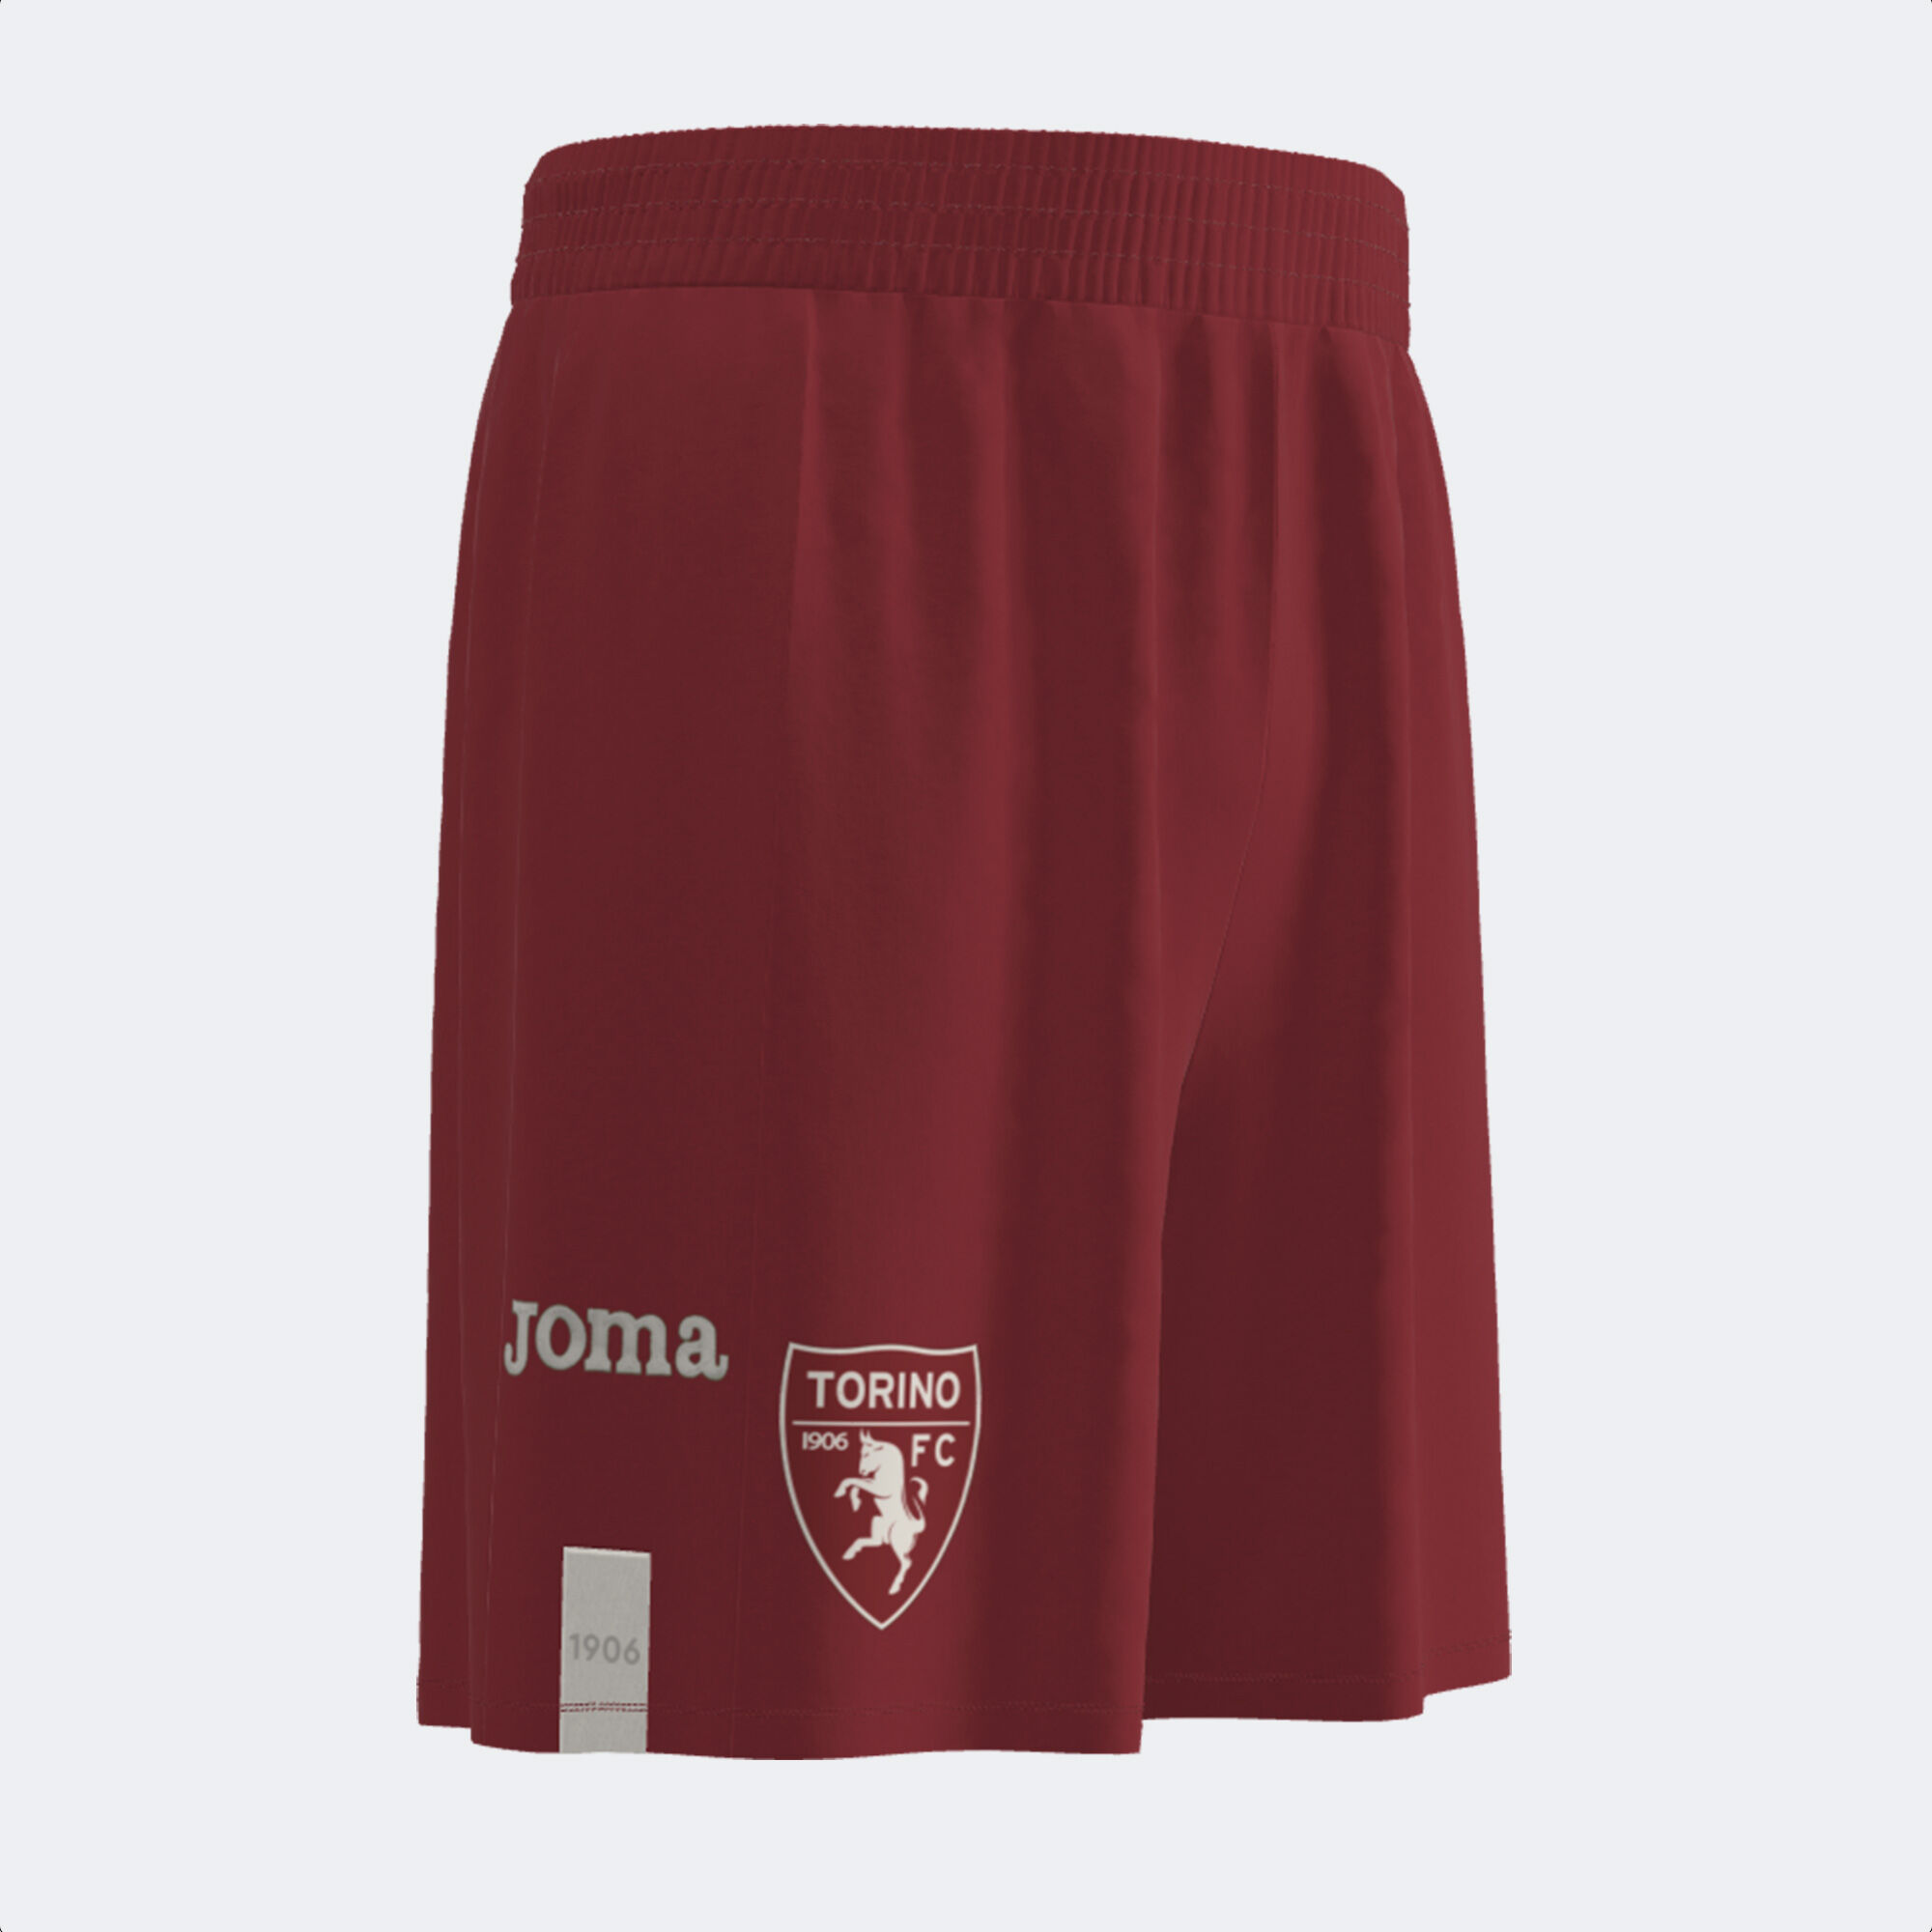 Joma's new 2023/2024 kit for Torino FC - Joma World